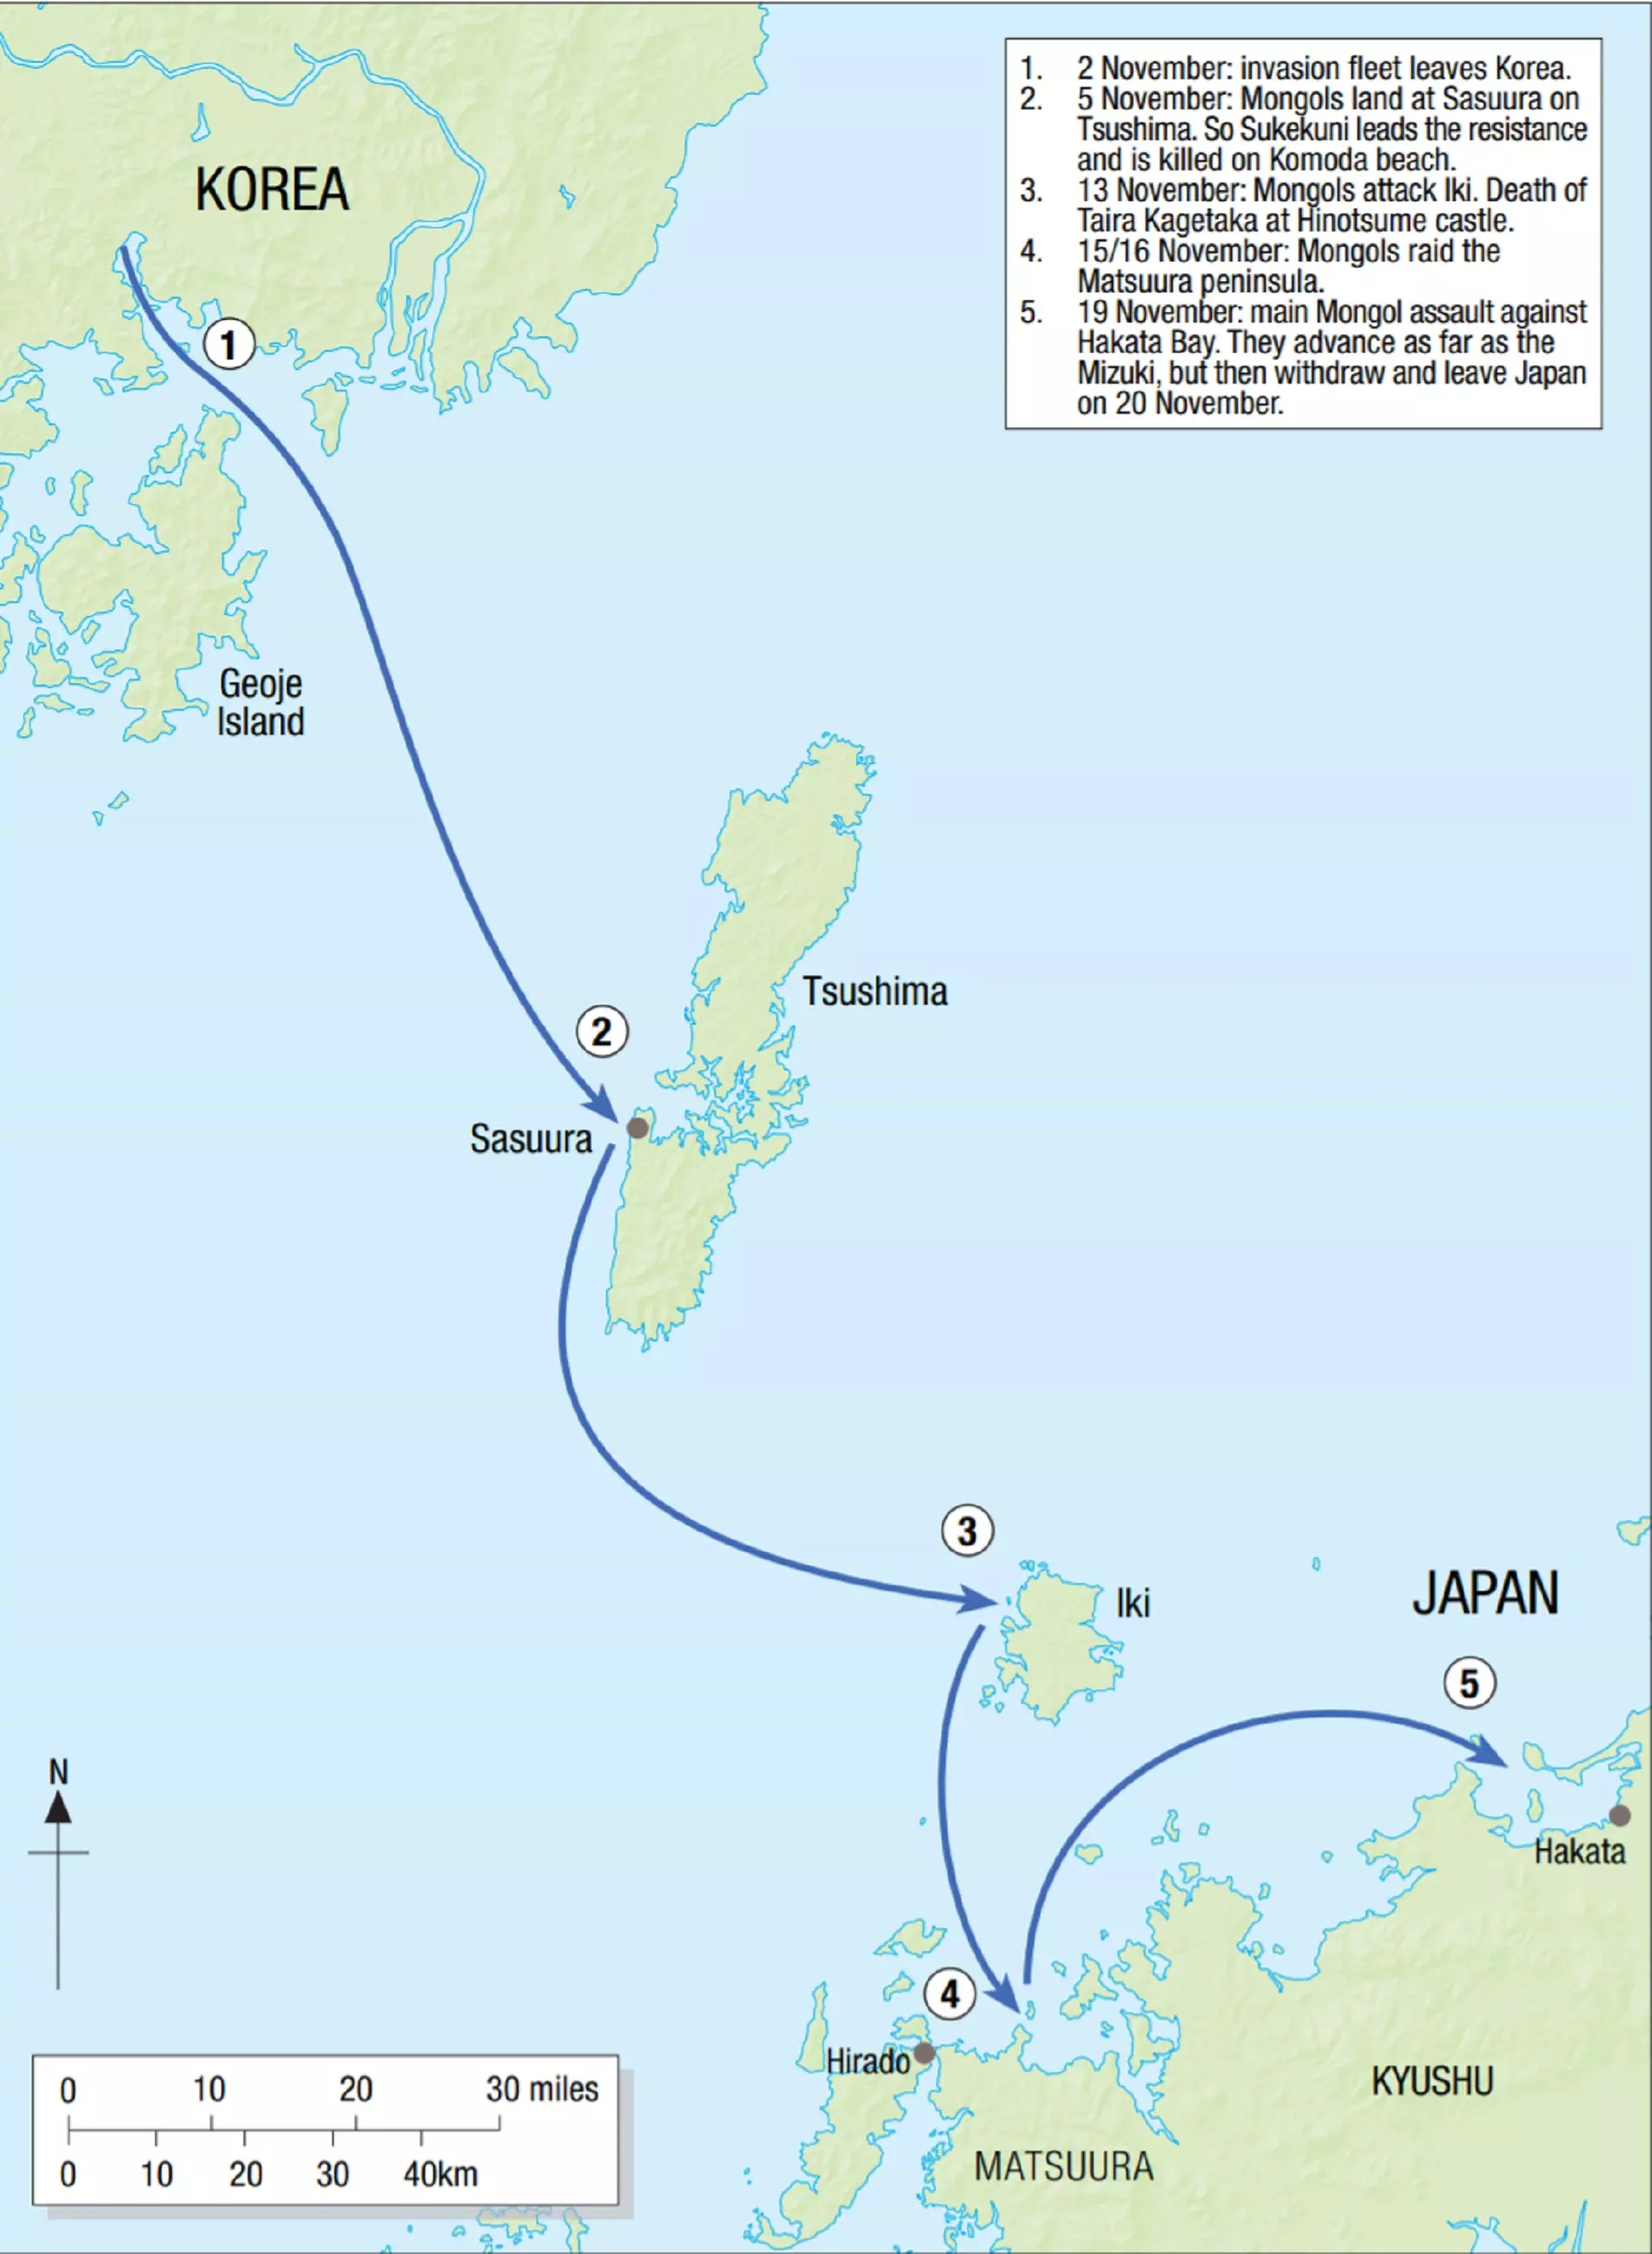 ترتیب زمانی حمله مغولستان به مناطق ژاپن